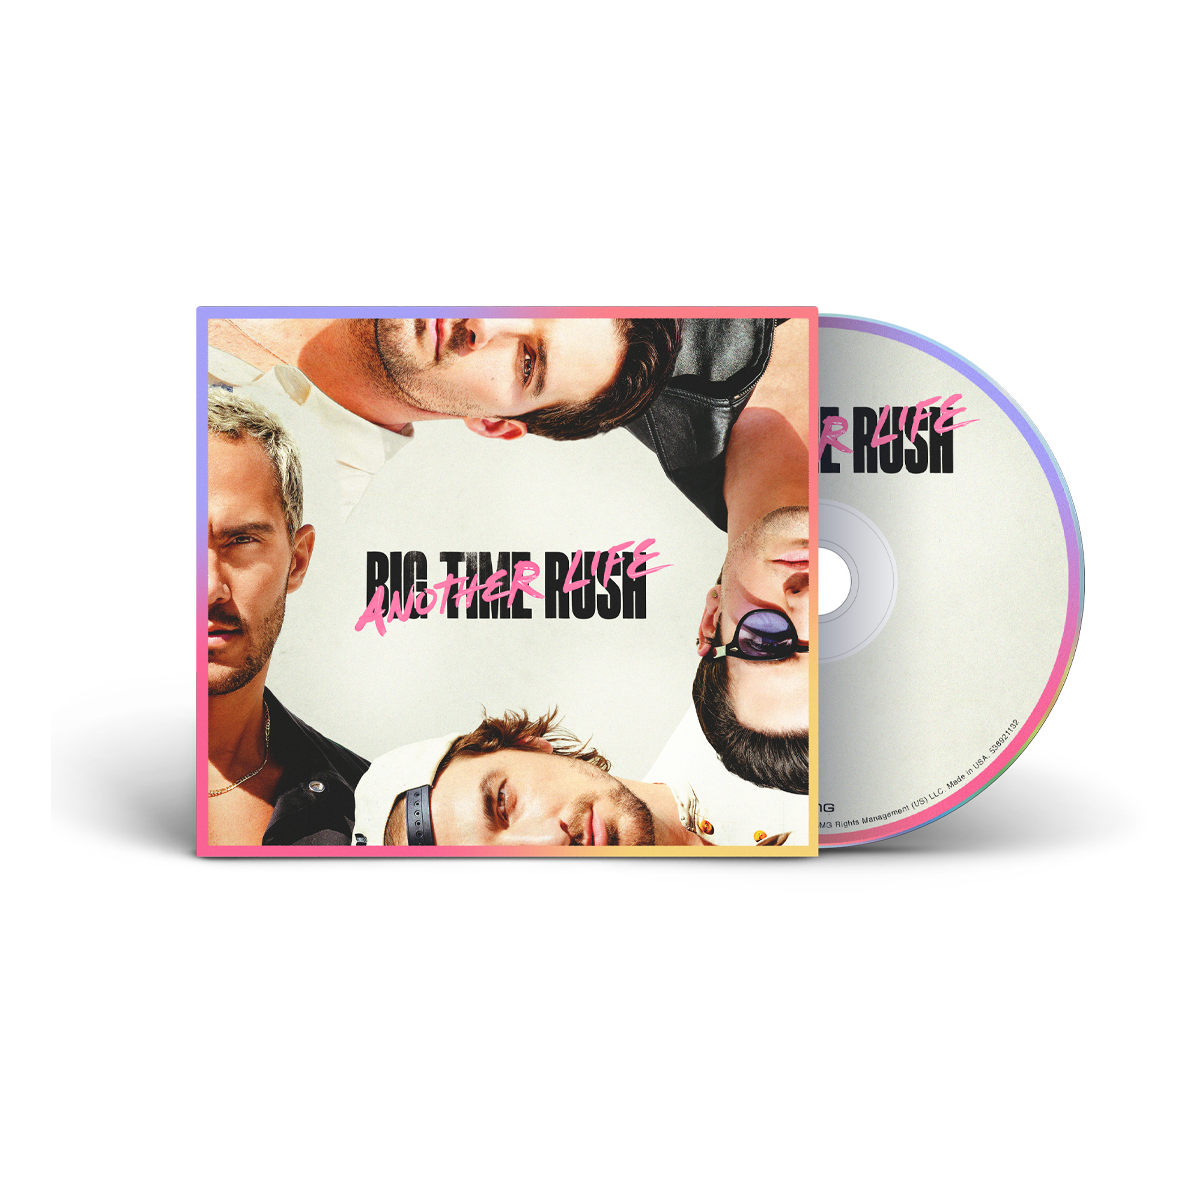 Big Time Rush - BTR (CD) 